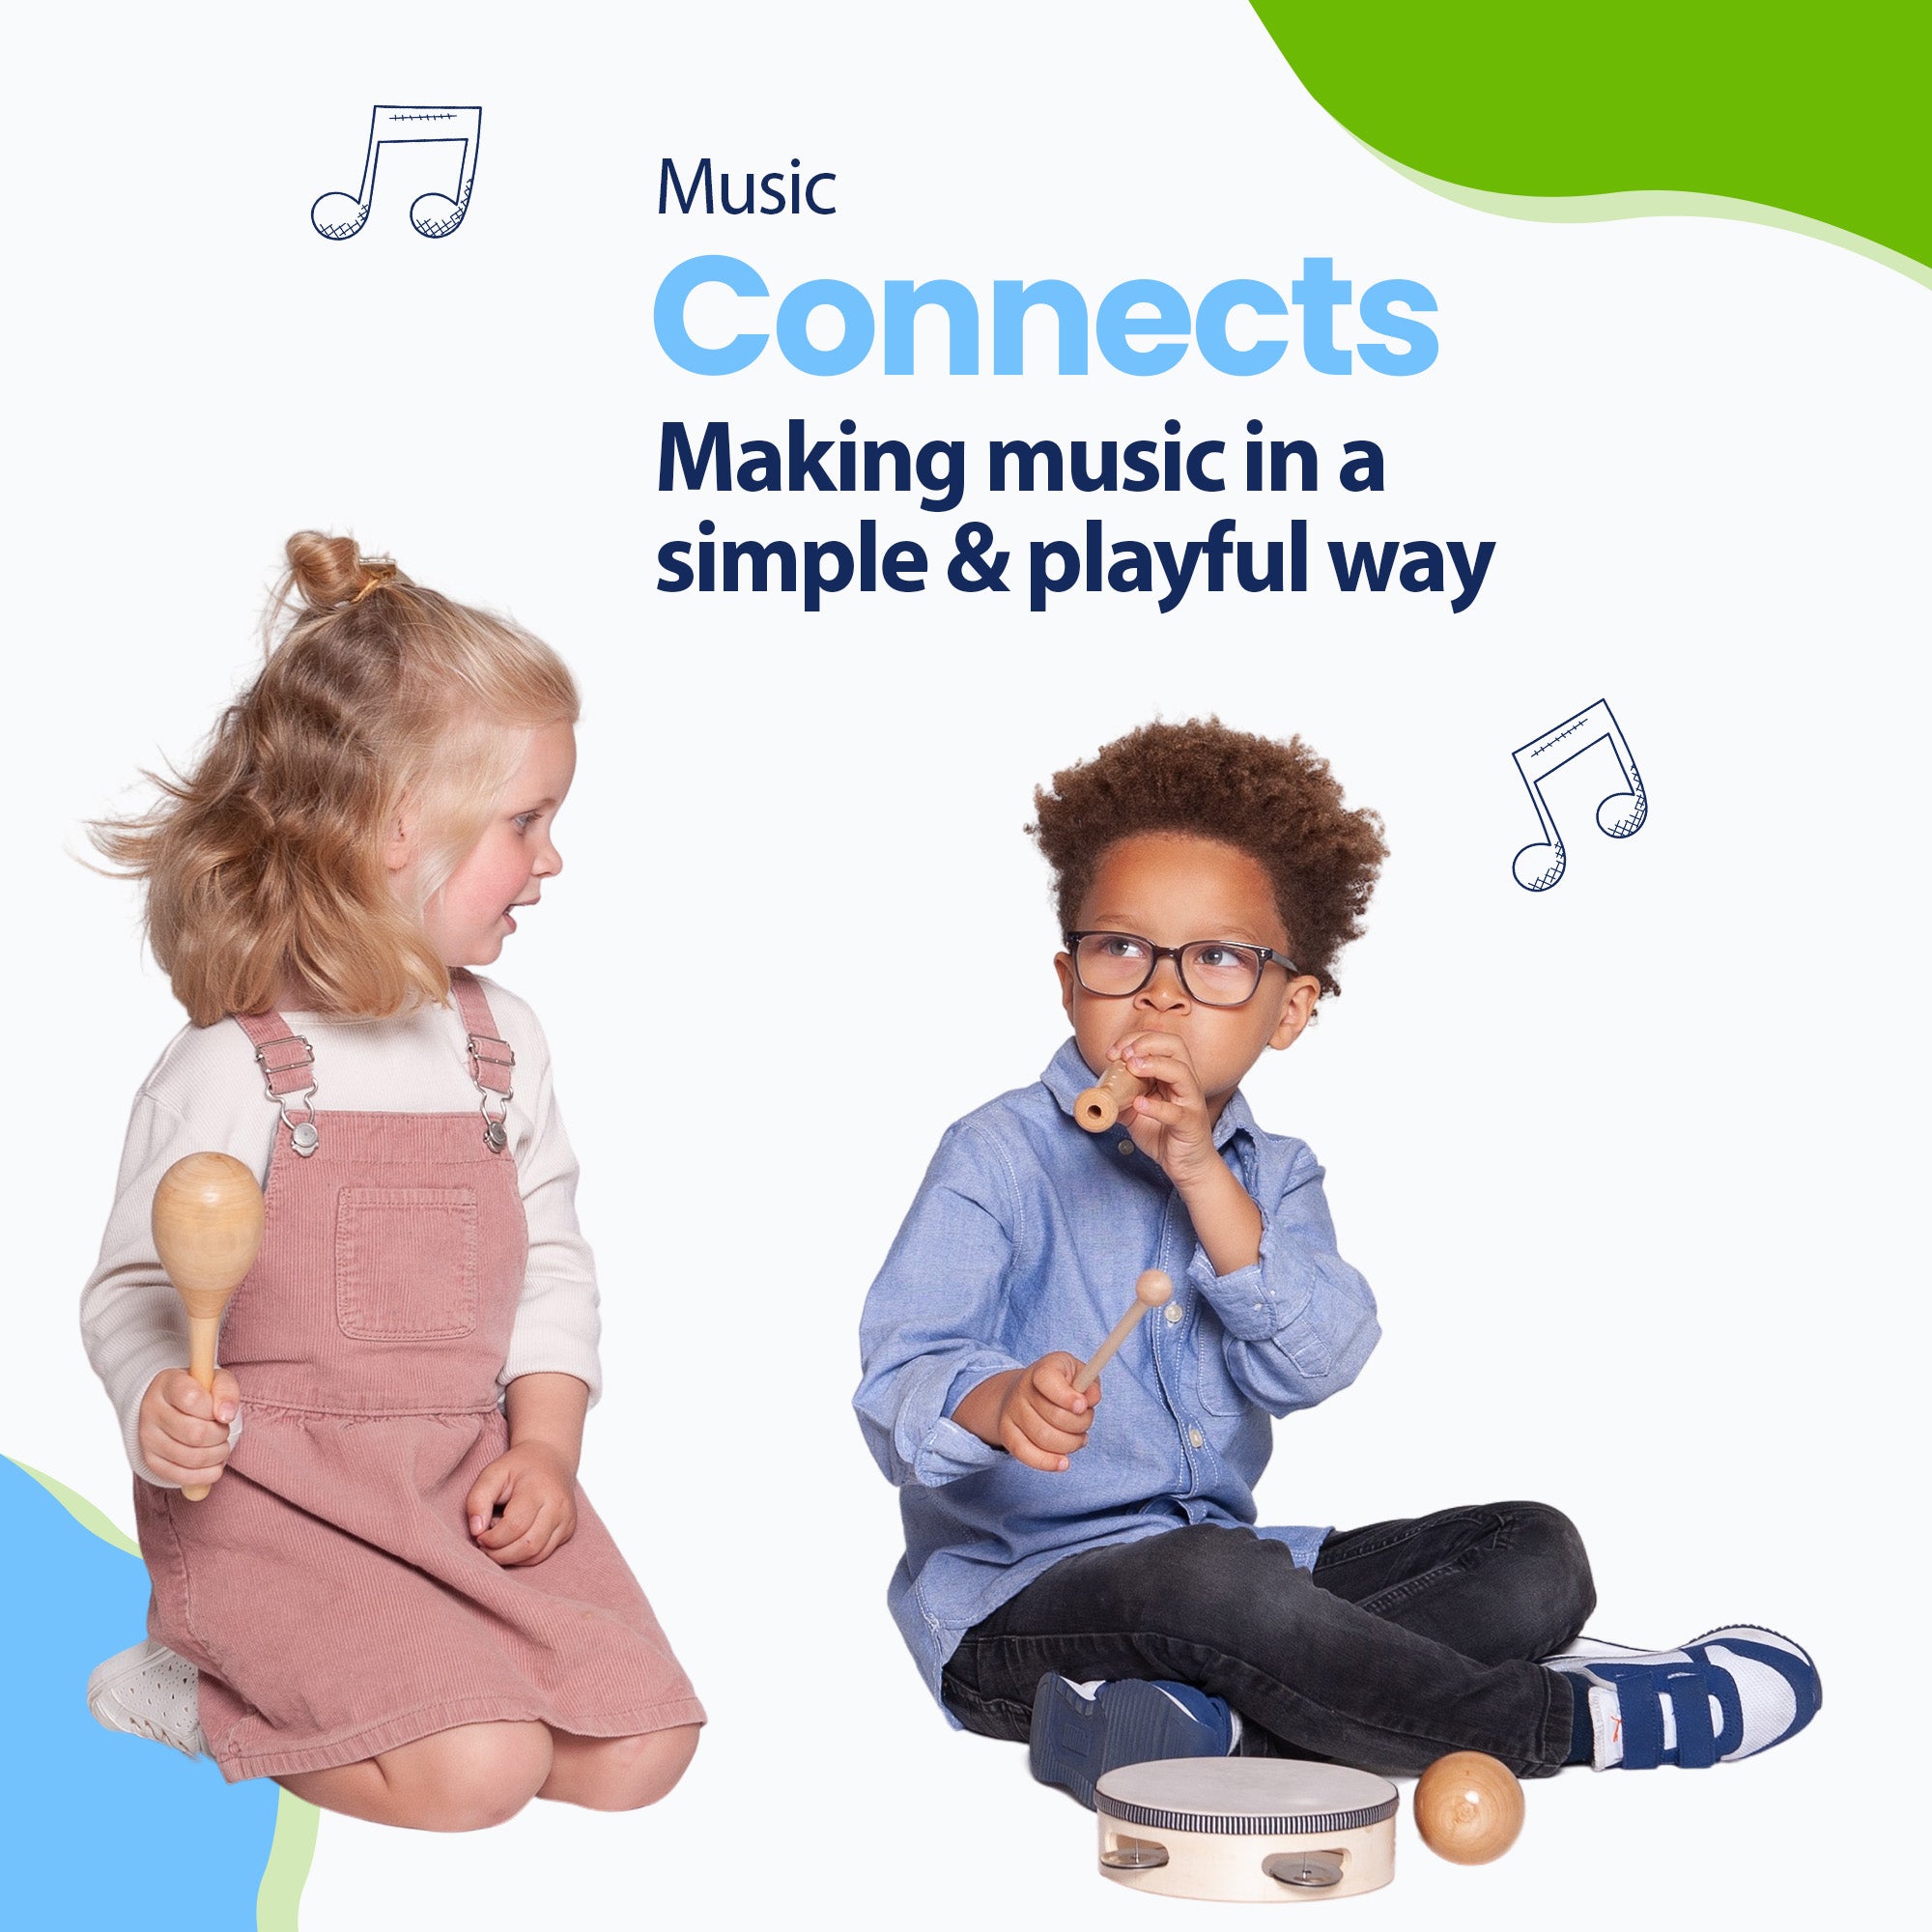 Muzyka łączy dorosłych, ale i dzieci. Naucz swoje dziecko wspólnej zabawy i rozwijaj jego talent muzyczny